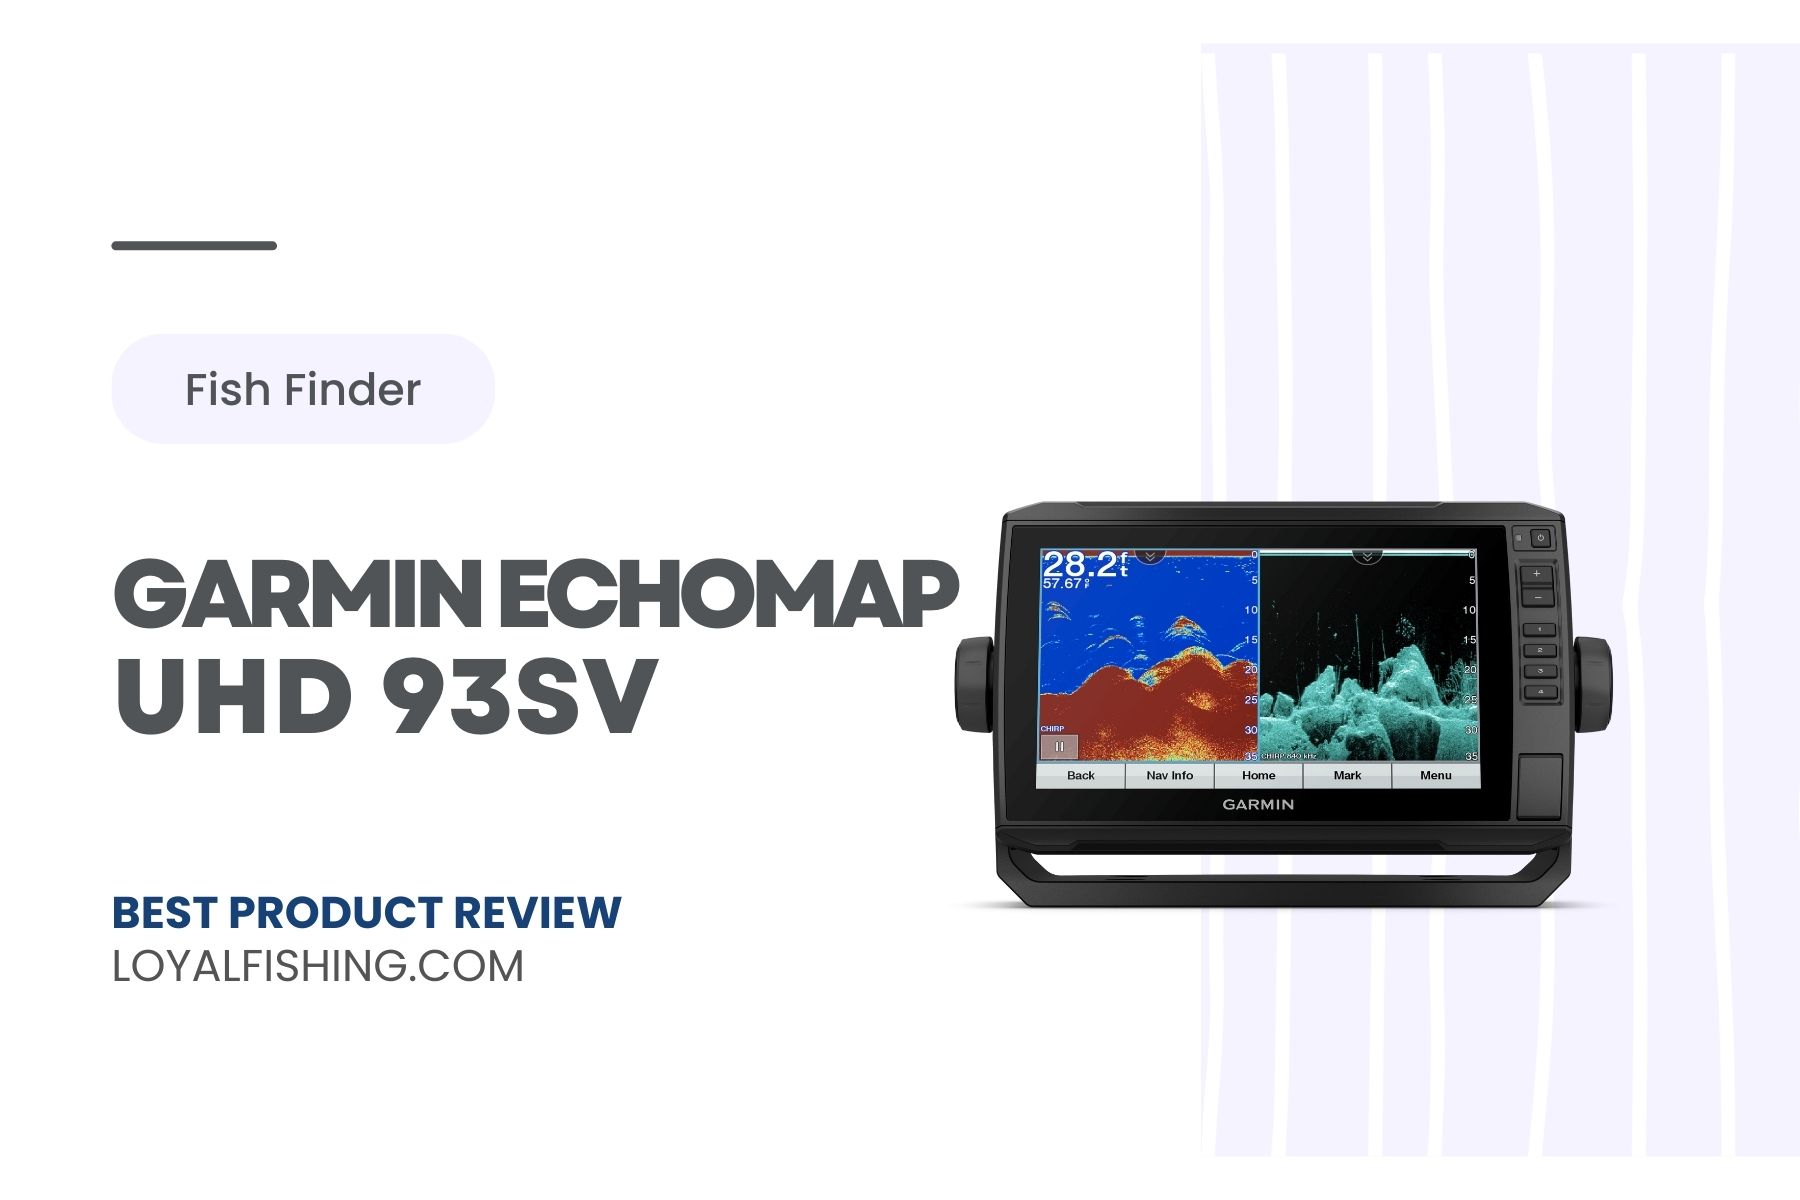 Garmin ECHOMAP UHD 93sv Review